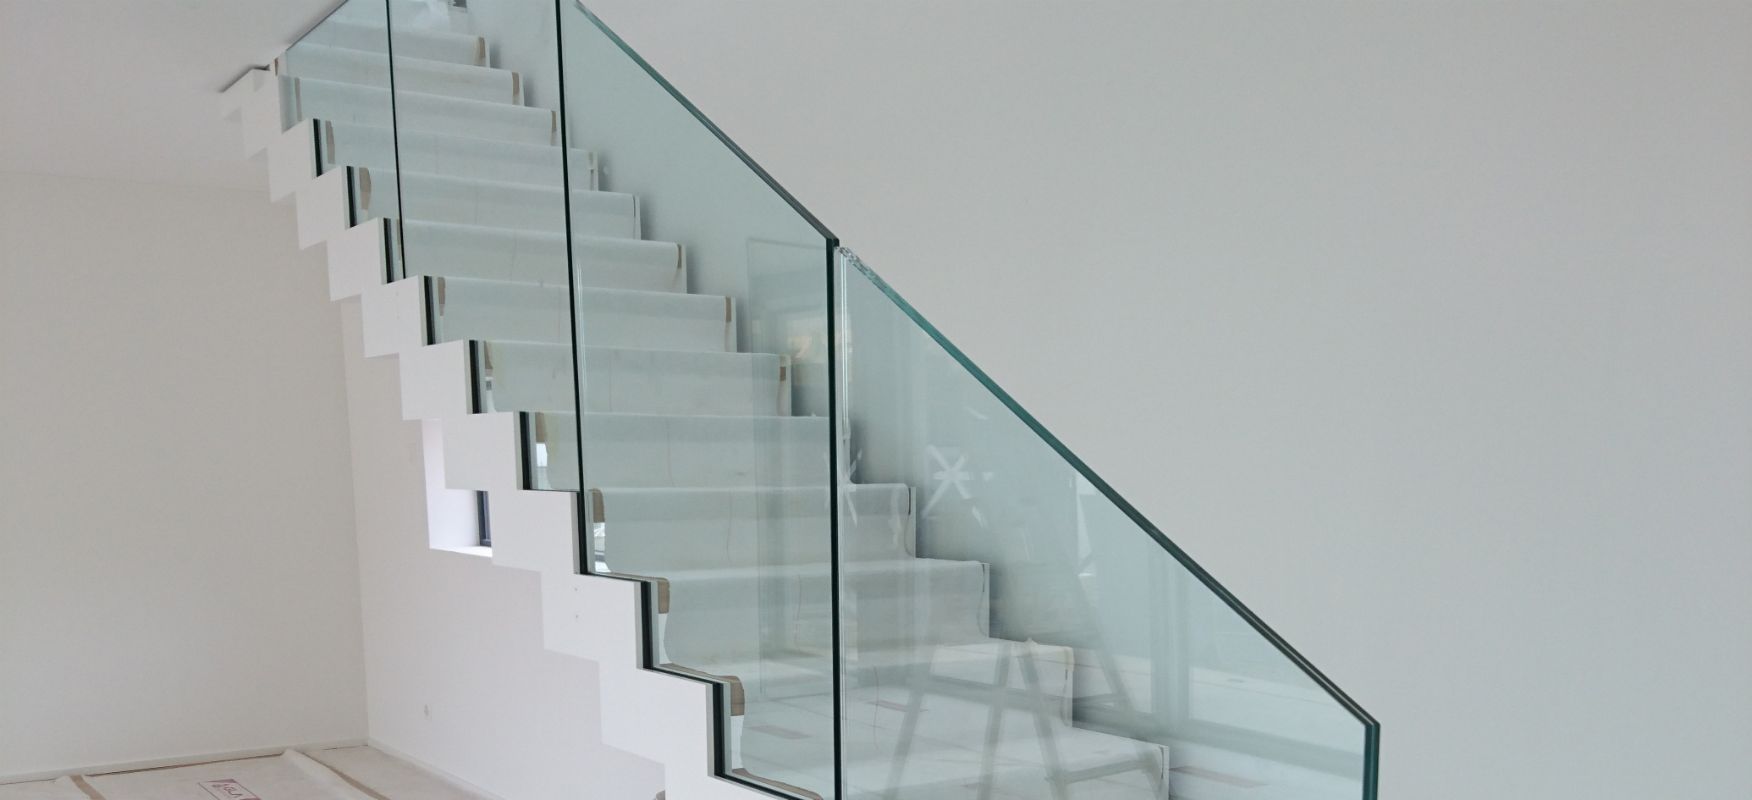 Escalier interne avec parapet en verre.